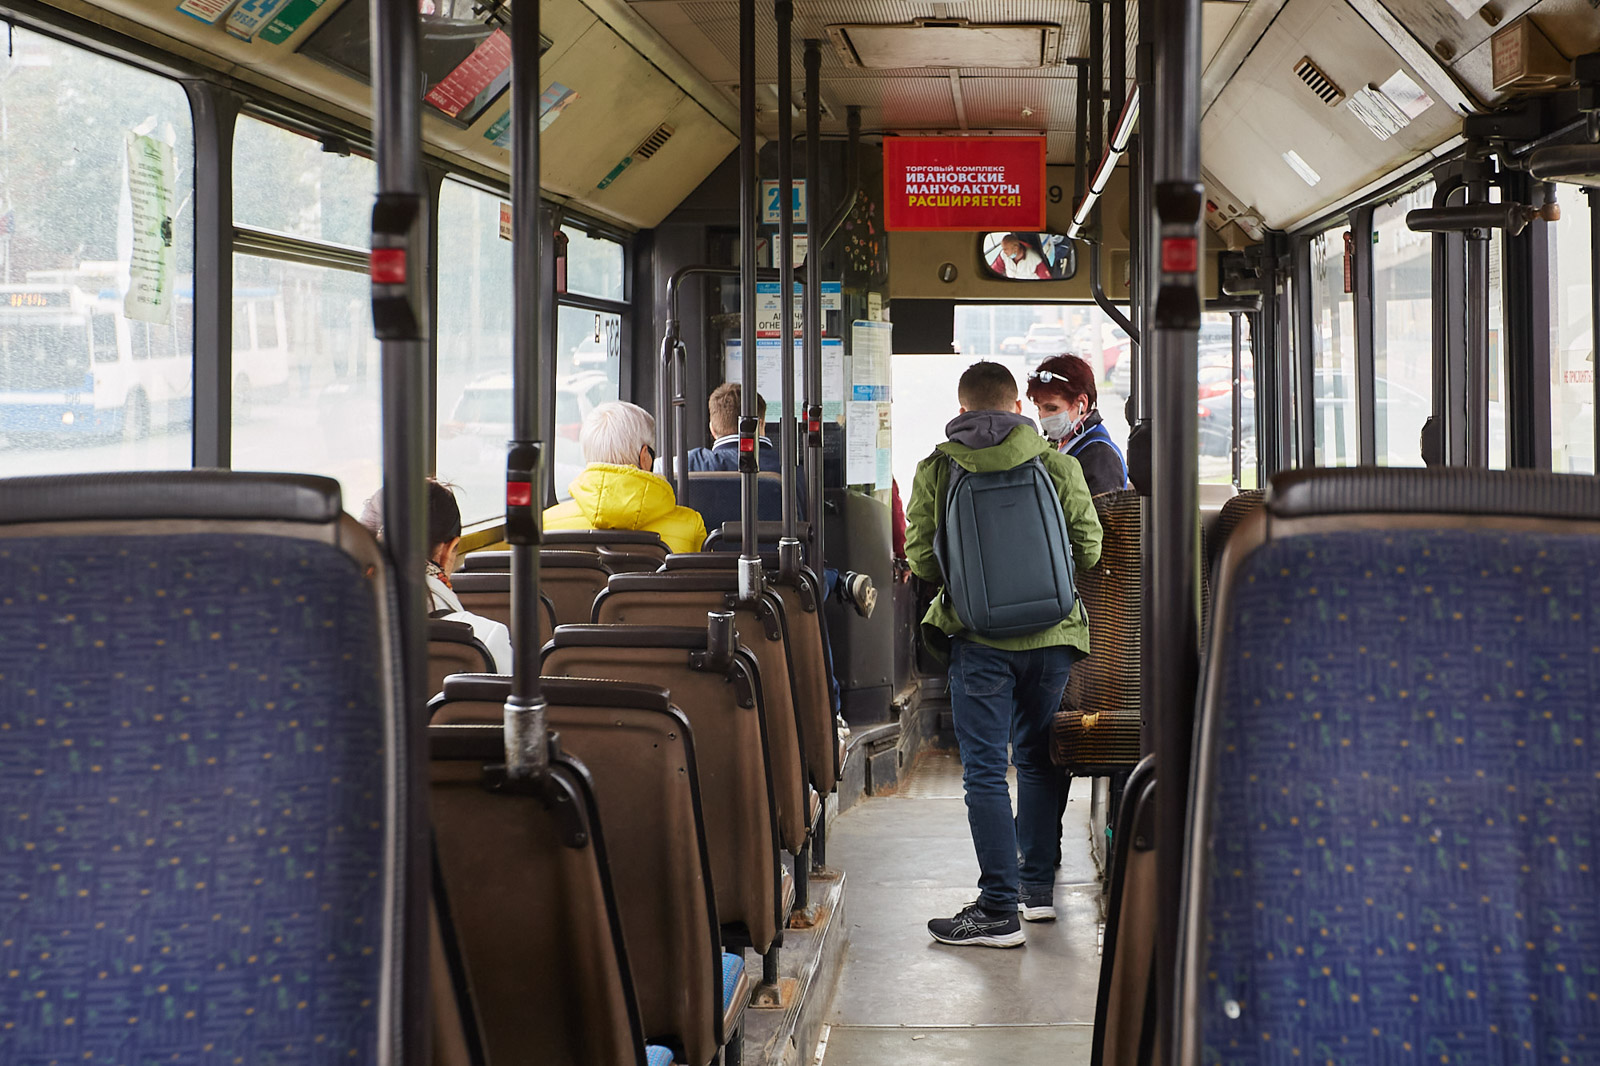 Мэрия областного центра обещает решить вопрос с пробками для общественного транспорта. Во Владимире могут появиться первые специальные полосы для движения автобусов и троллейбусов. Работы должны стартовать уже этой весной.